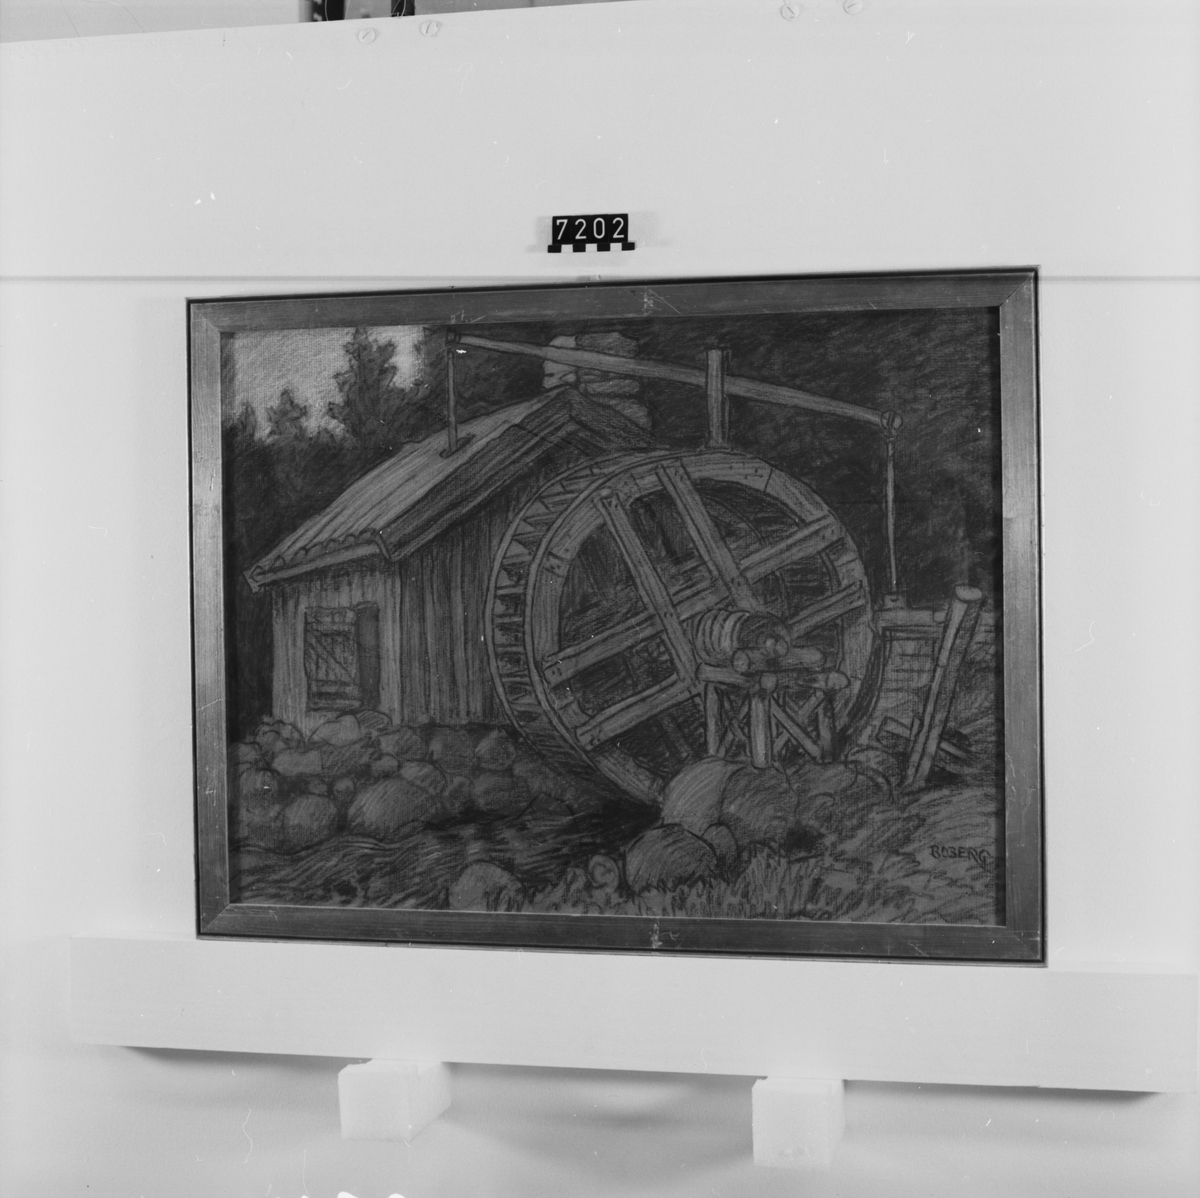 Signerad "Boberg". På tavlans baksida: "Groftråddrageriet vid Getarp i /Gnosjö (Småland) 1922". "Ferdinand Boberg". I glas och förgylld ram.